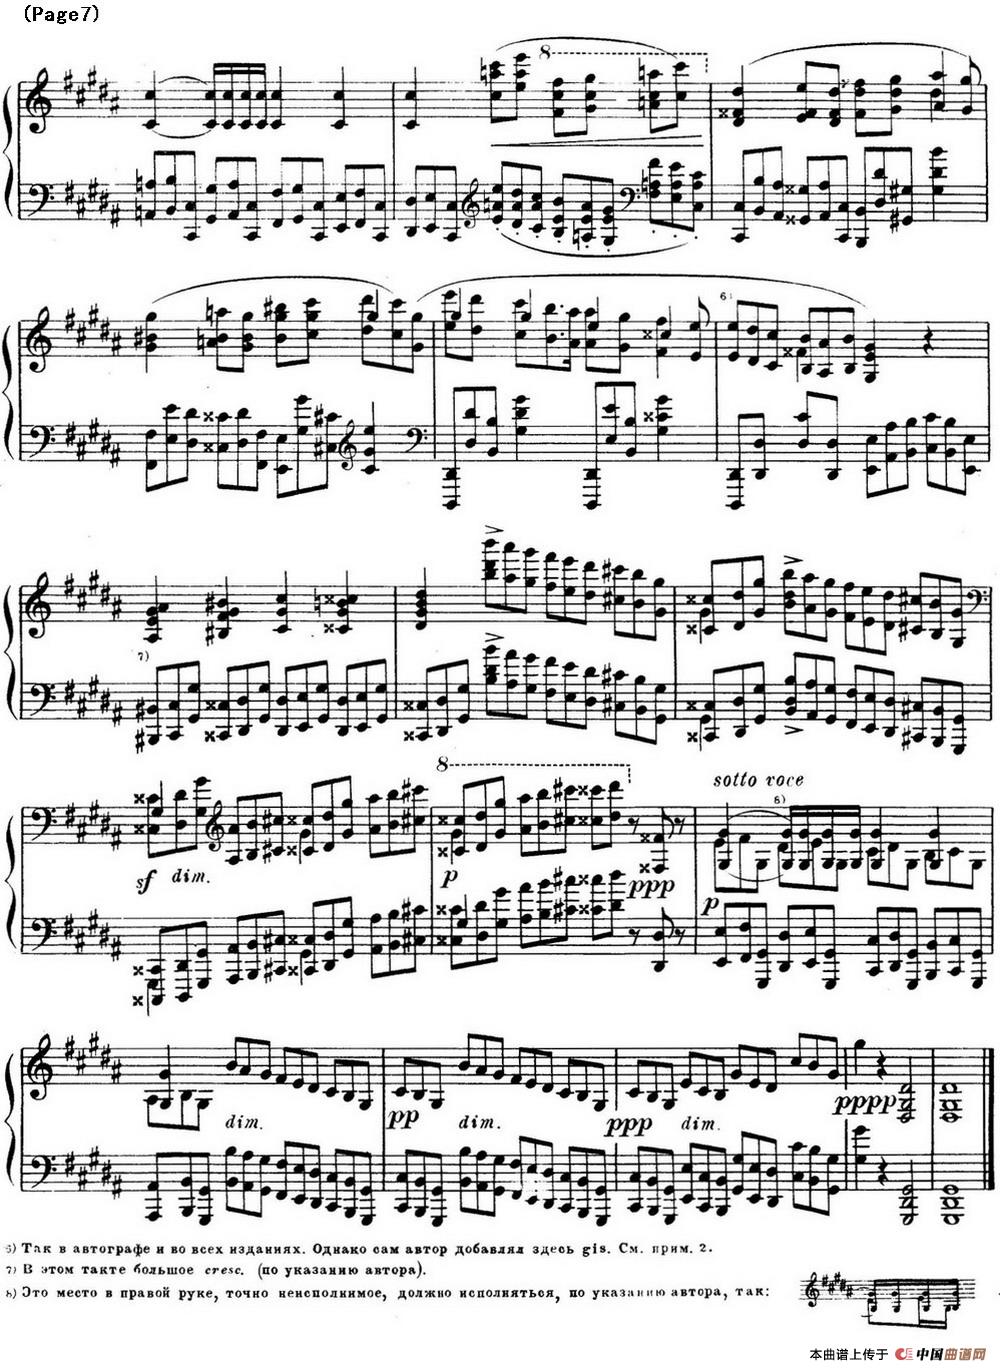 斯克里亚宾12首钢琴练习曲 Op8（No.9 Alexander Scriabin Etudes）(1)_Scriabin Etude Op.8 No.9_页面_7.jpg